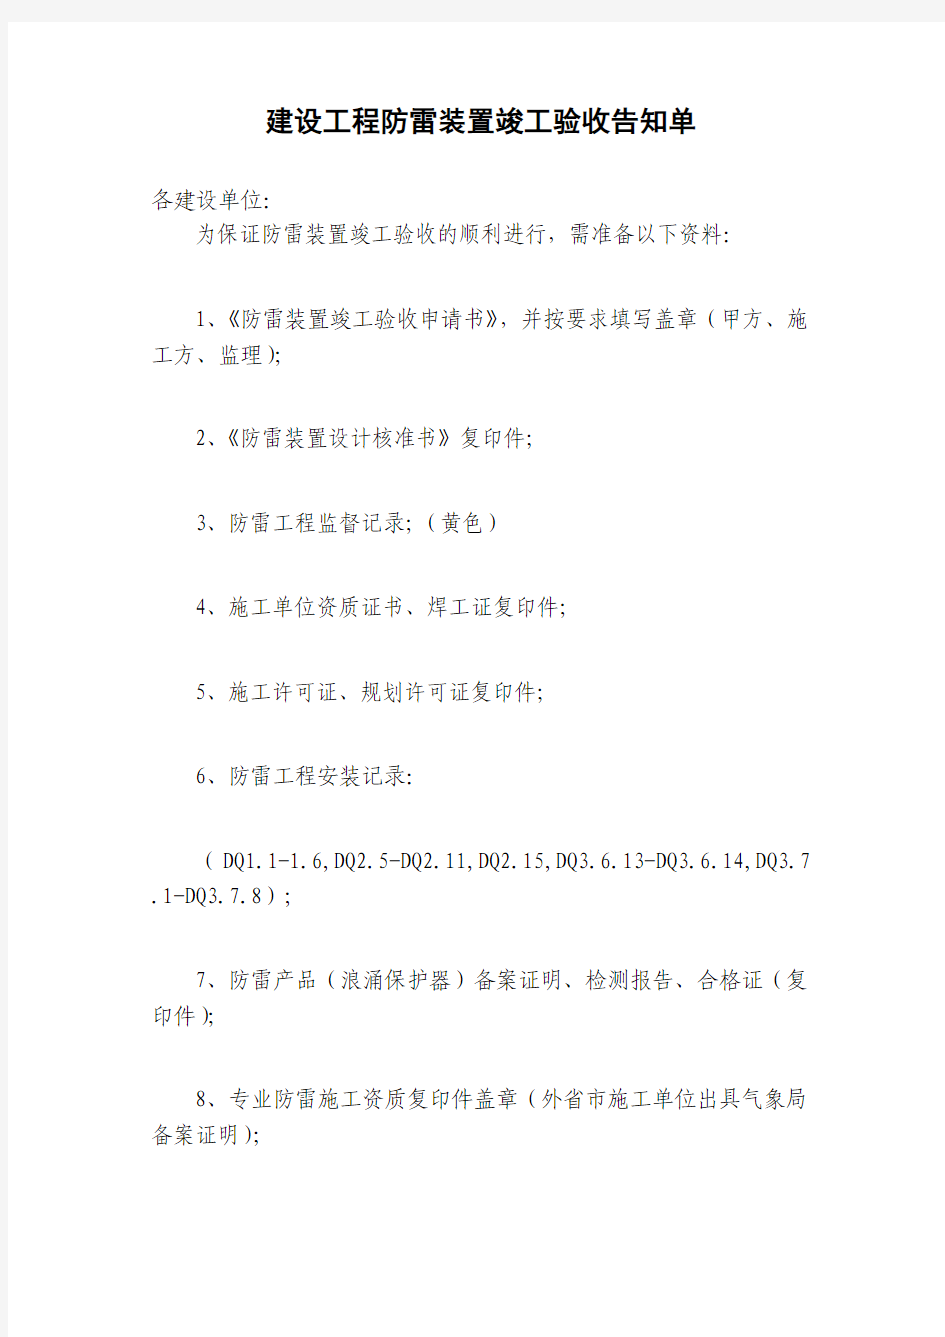 吴江市建设工程防雷装置竣工验收告知单